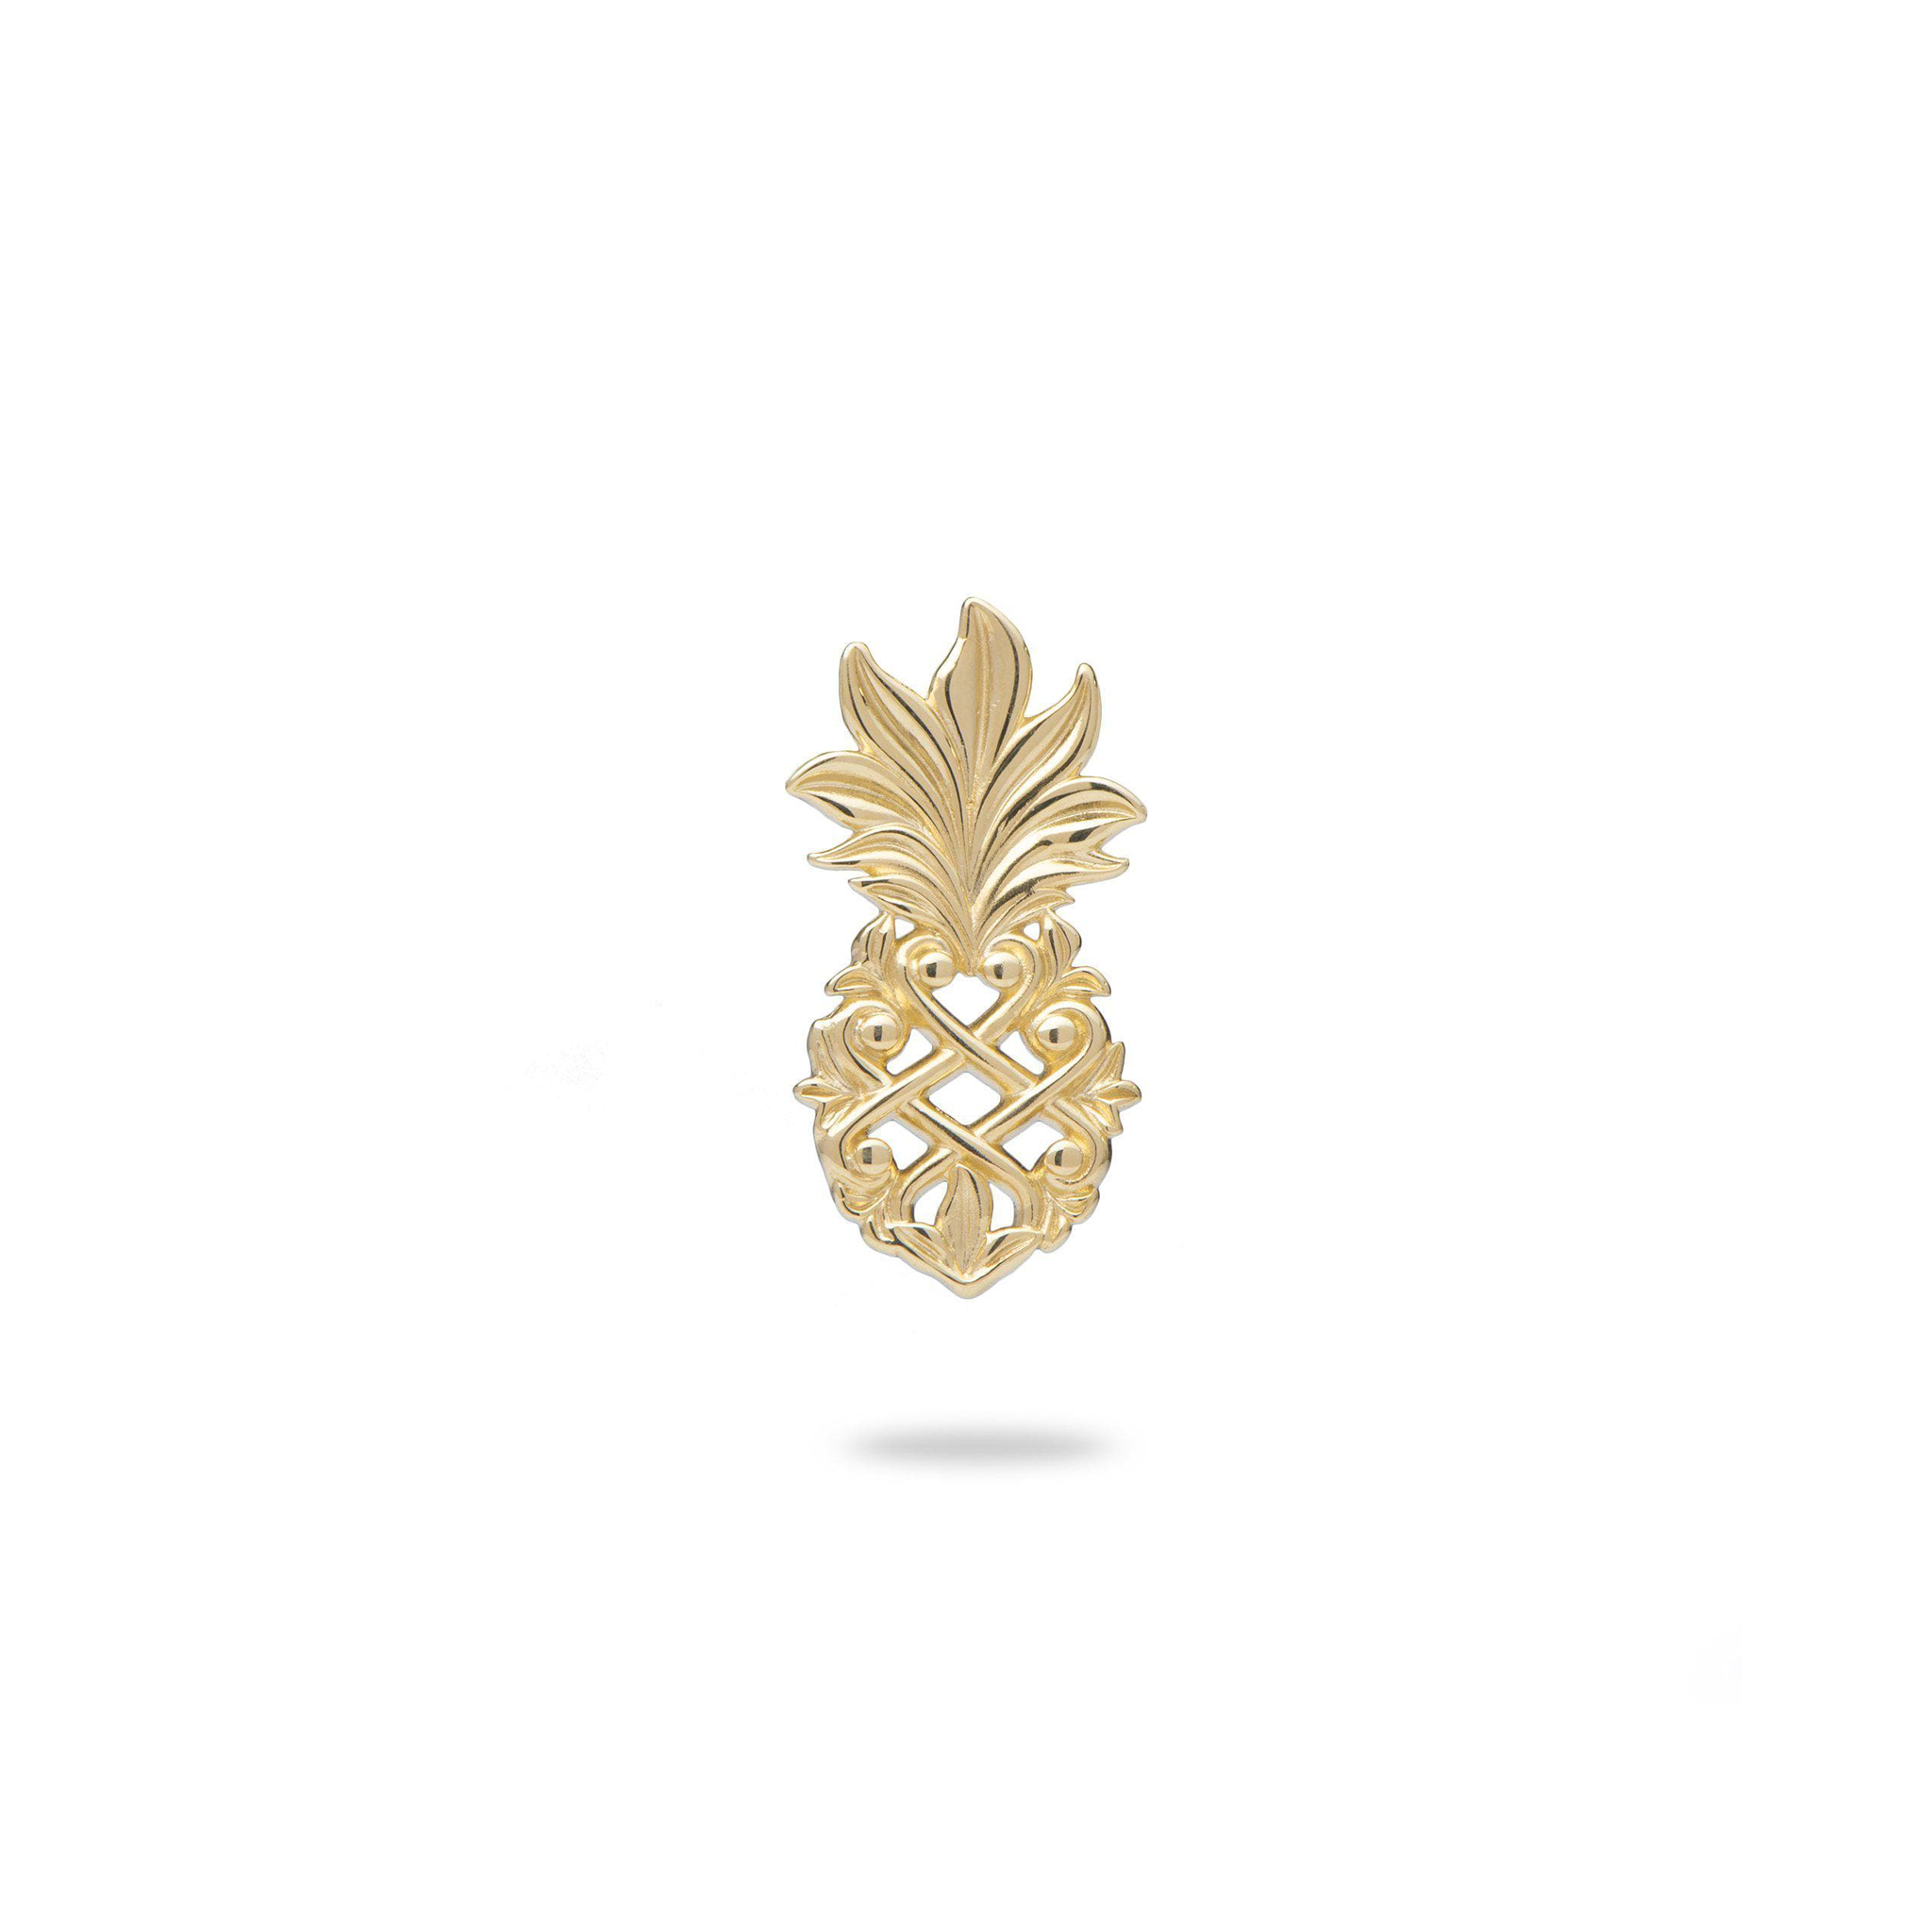 Living Heirloom Pineapple Pendant in Gold - 18mm